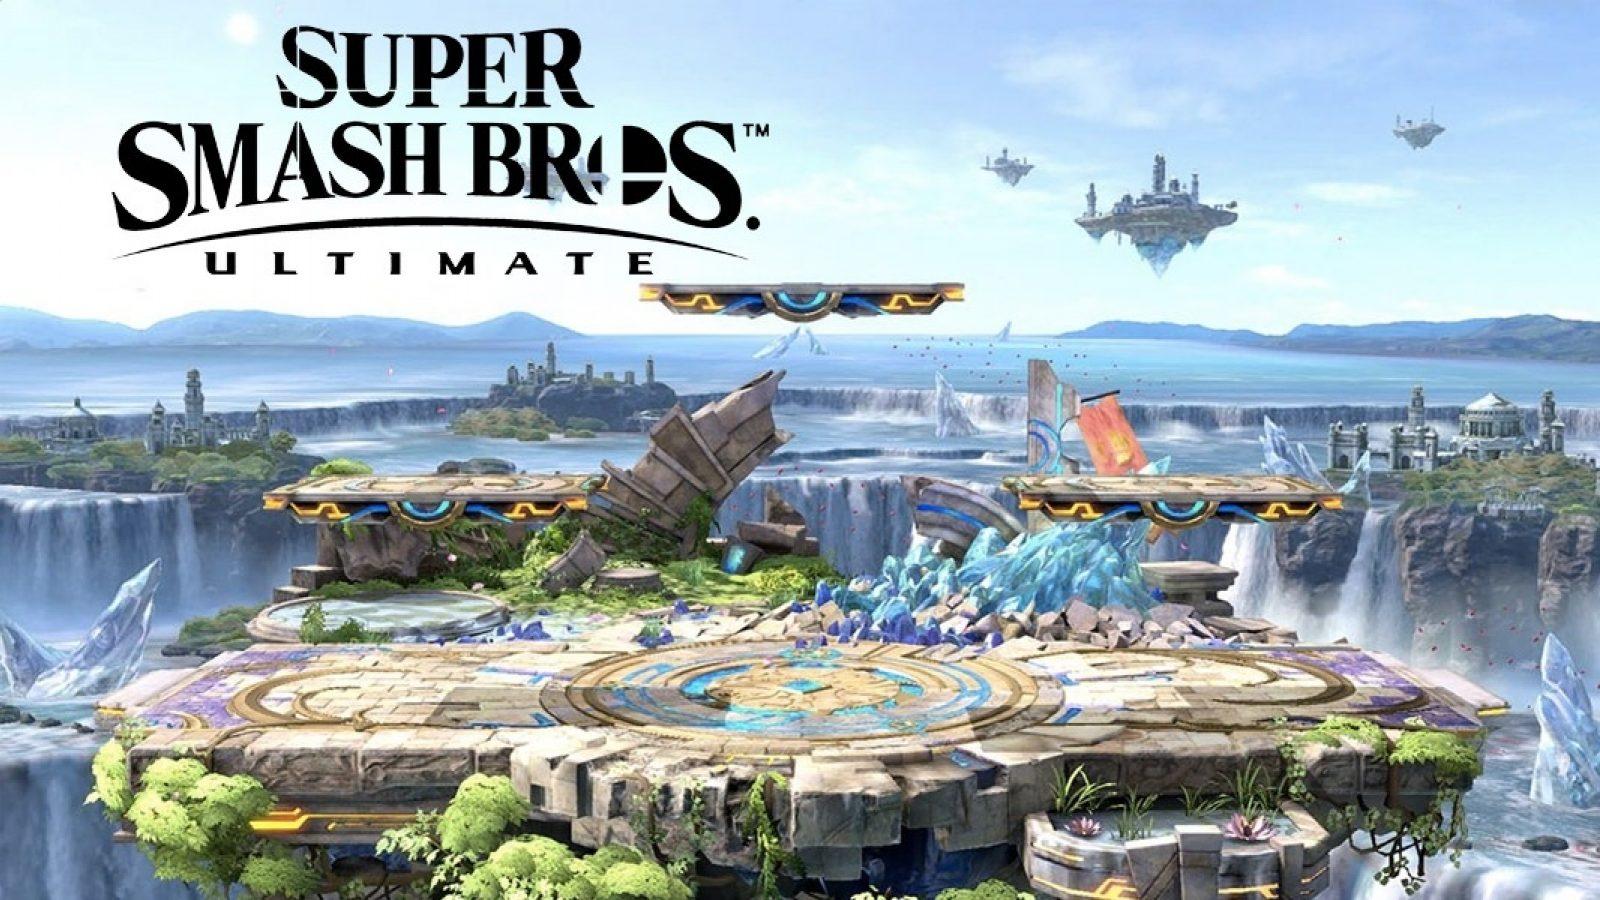 Super Smash Bros. Ultimate - Full Game 100% Walkthrough (World of Light) 